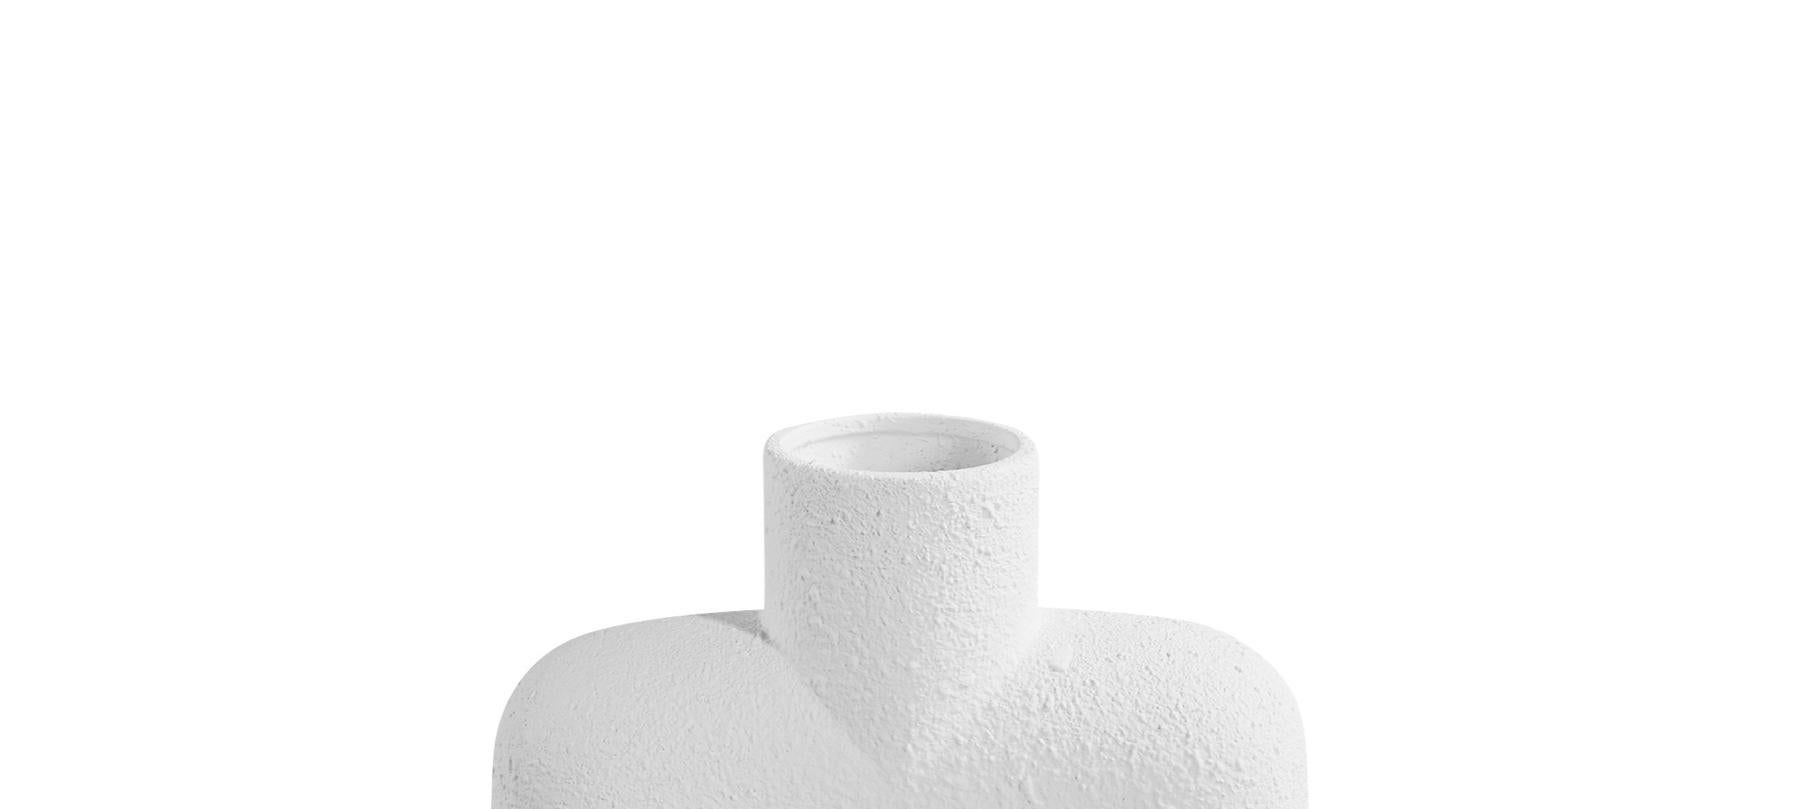 Vase en céramique blanche texturée de conception danoise, avec un seul bec verseur rond sur une base de deux sphères rondes.
Un design très sculptural.
Deux disponibles et vendus individuellement.

   